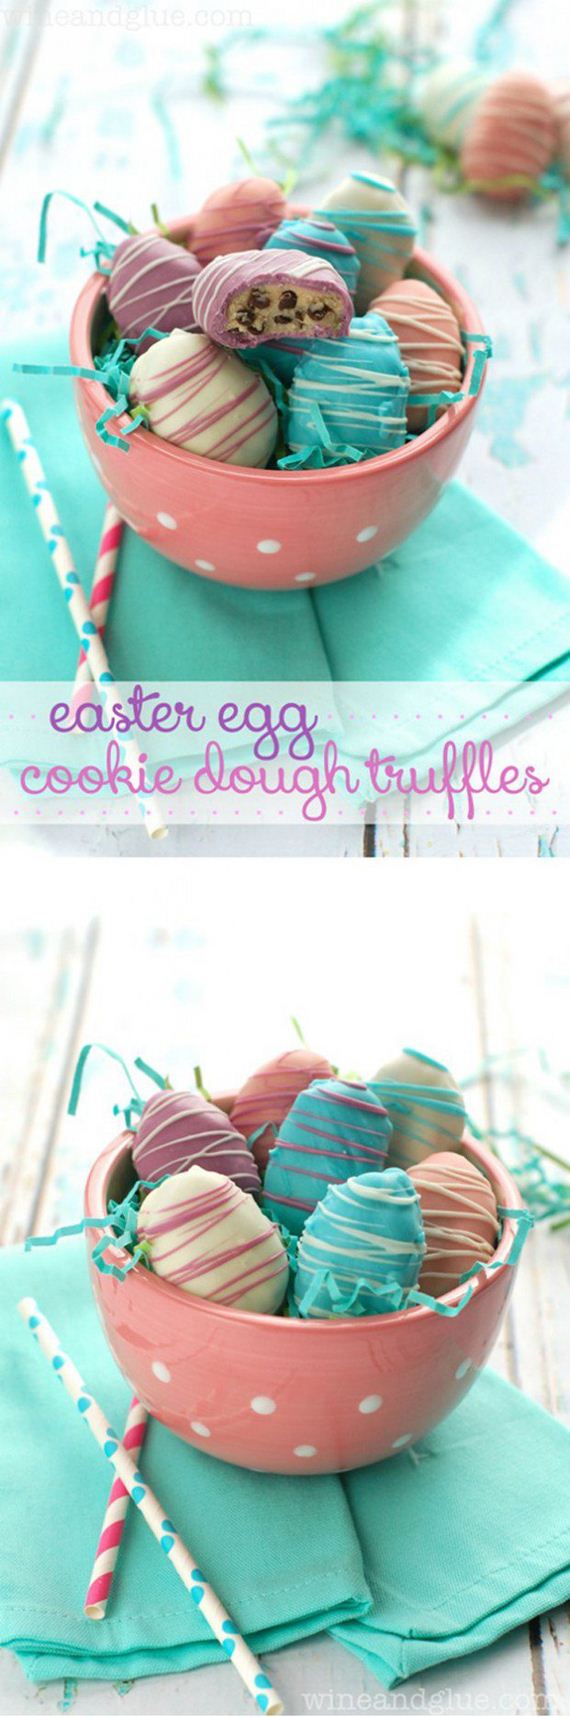 10-Easy-Tasty-Easter